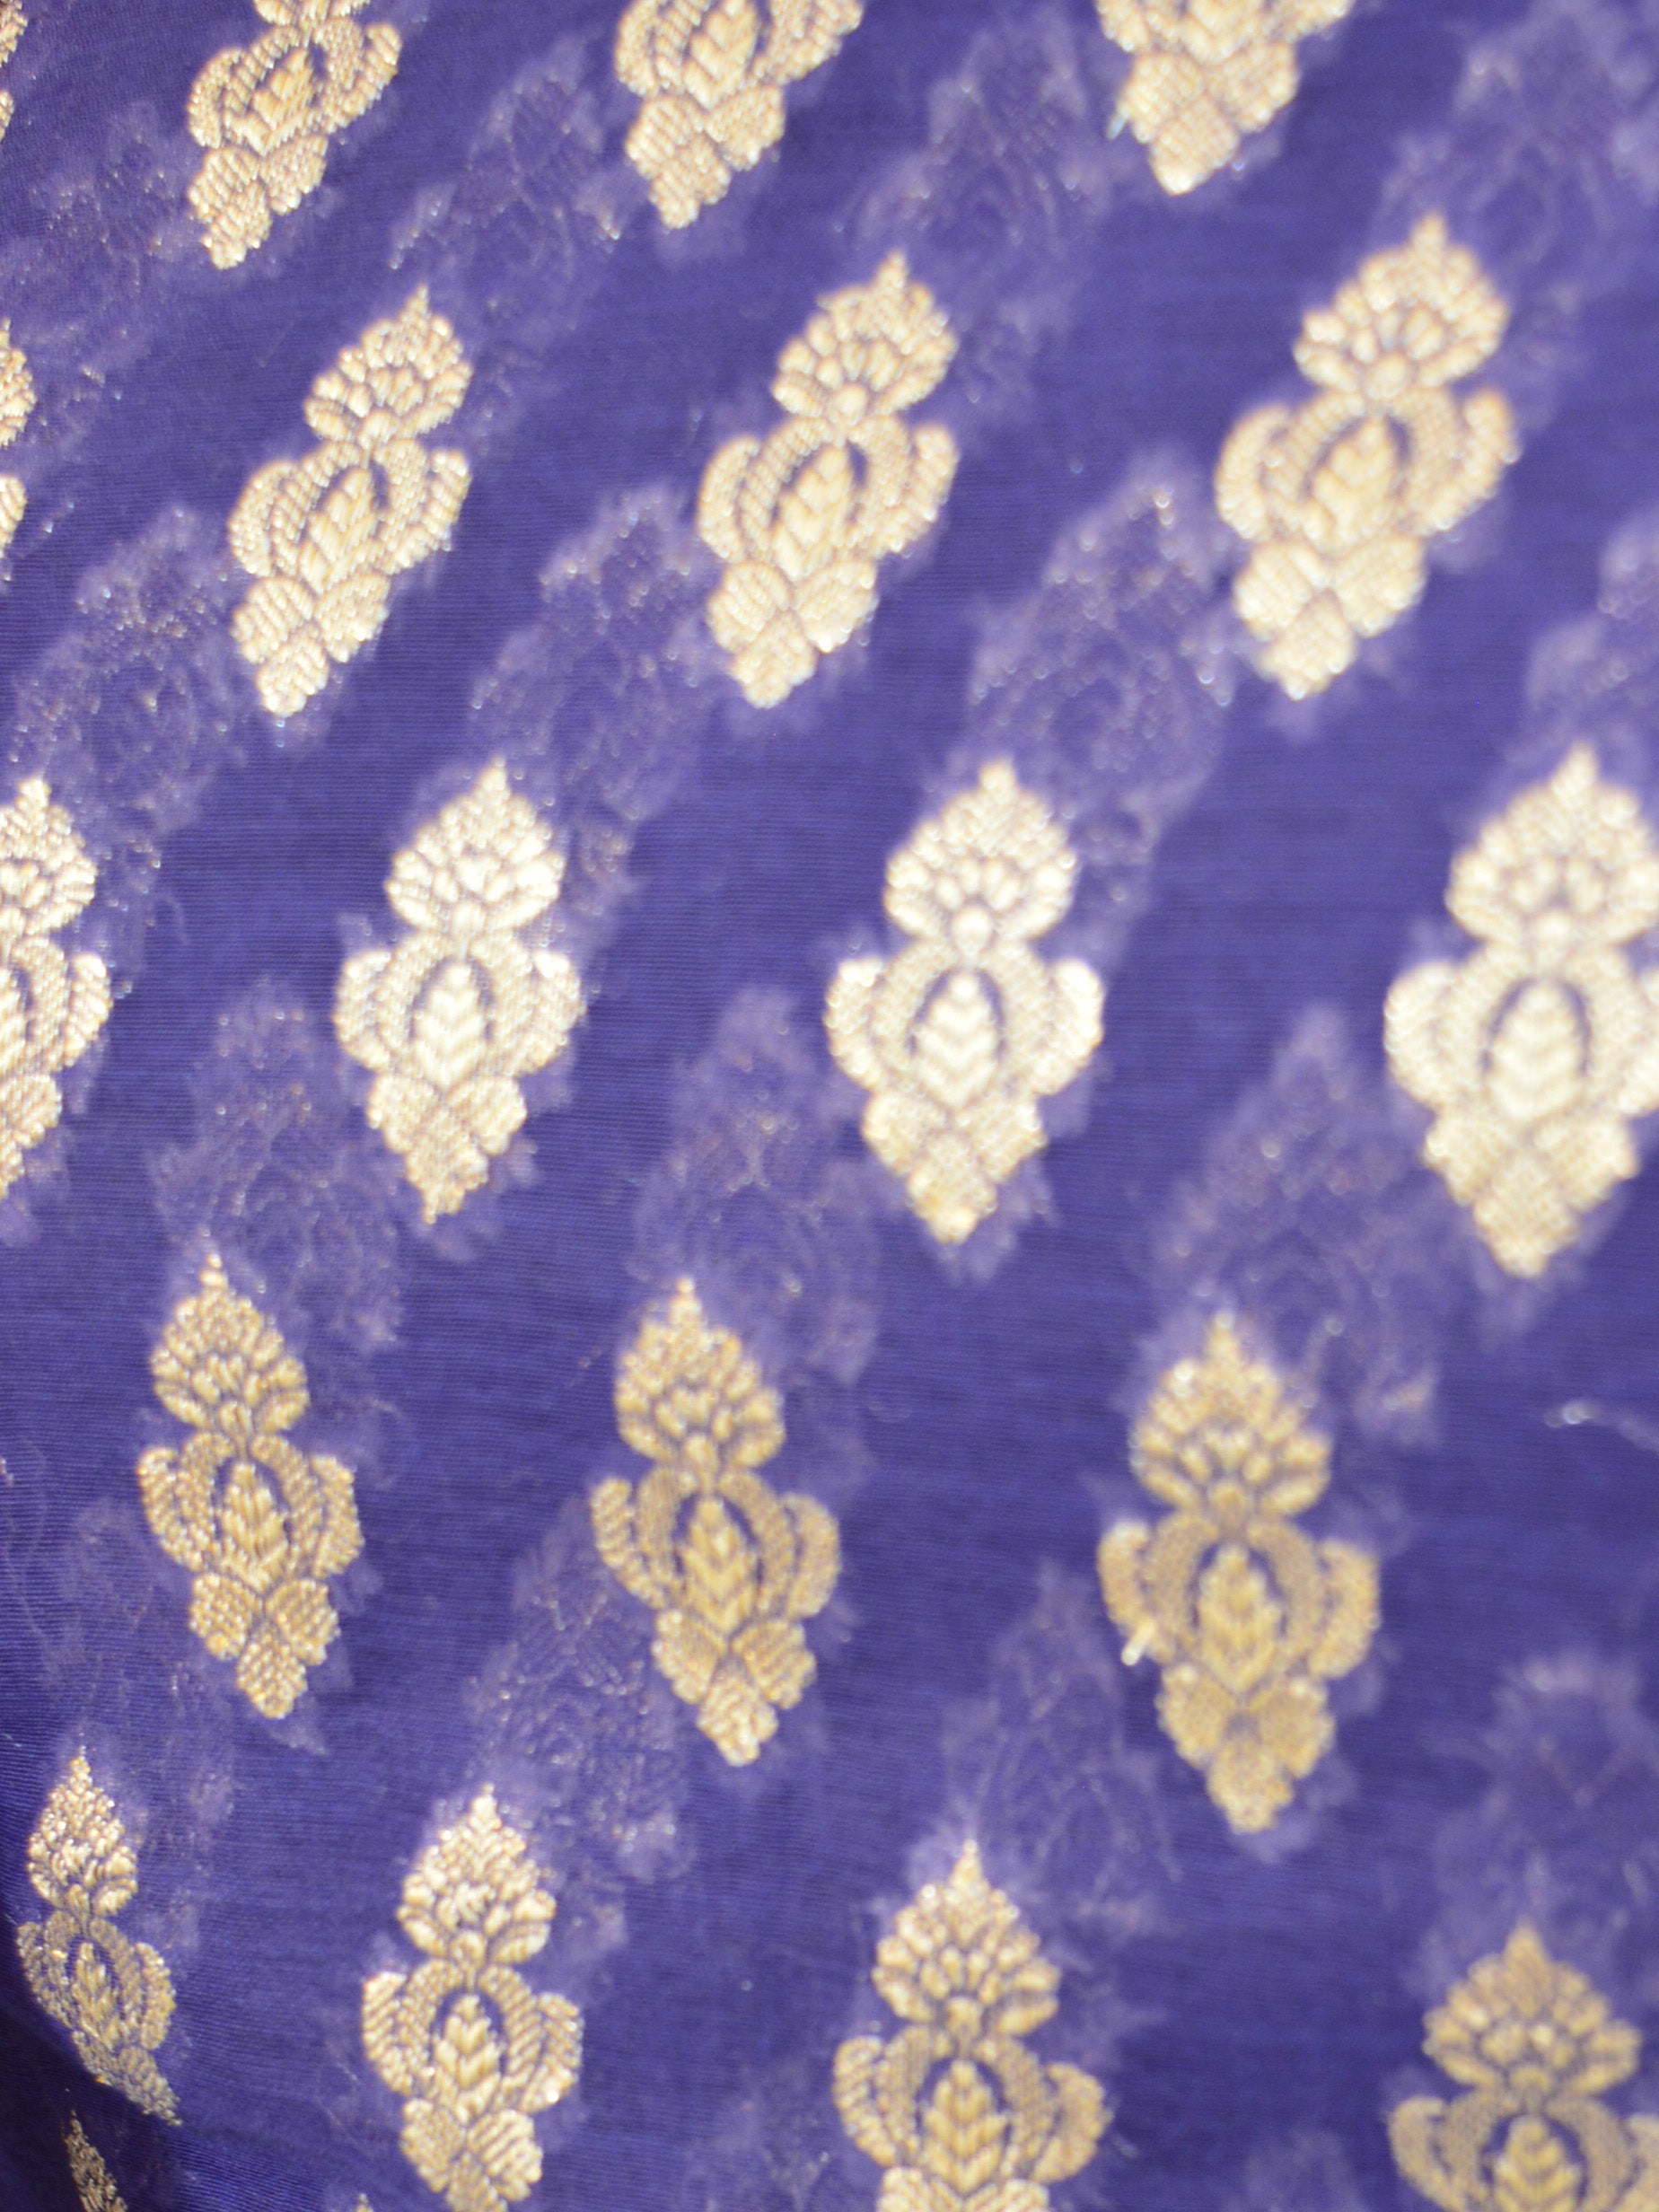 Banarasee Cotton Silk Salwar Kameez Fabric With Zari Buta-Deep Blue